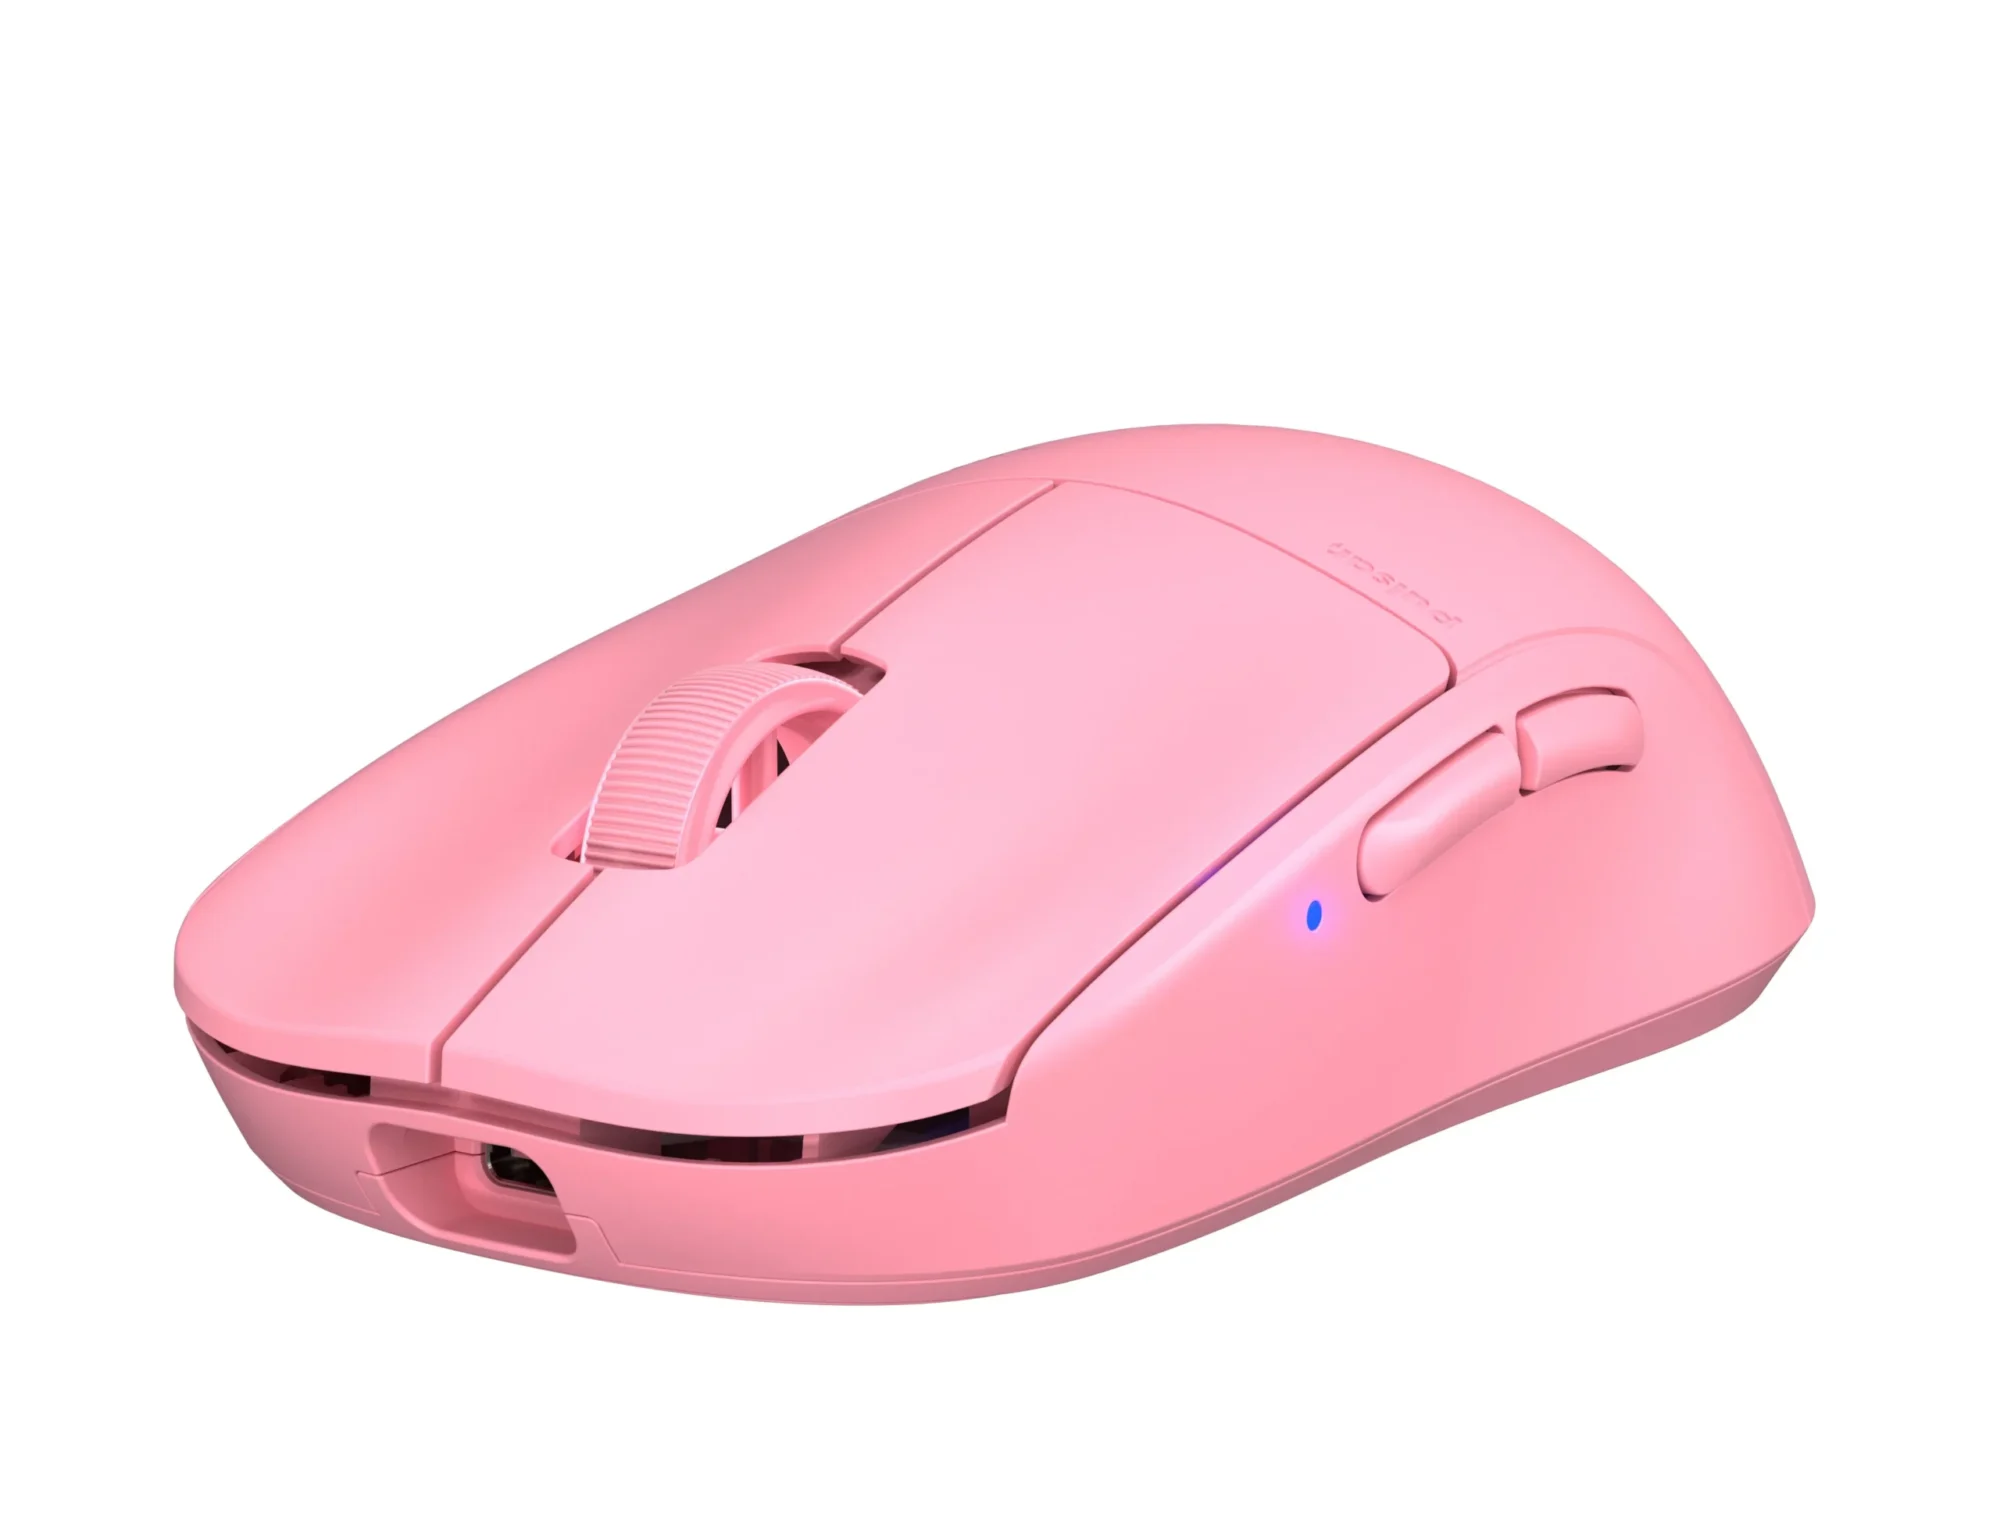 pulsar x2 mini pink edition - マウス・トラックボール